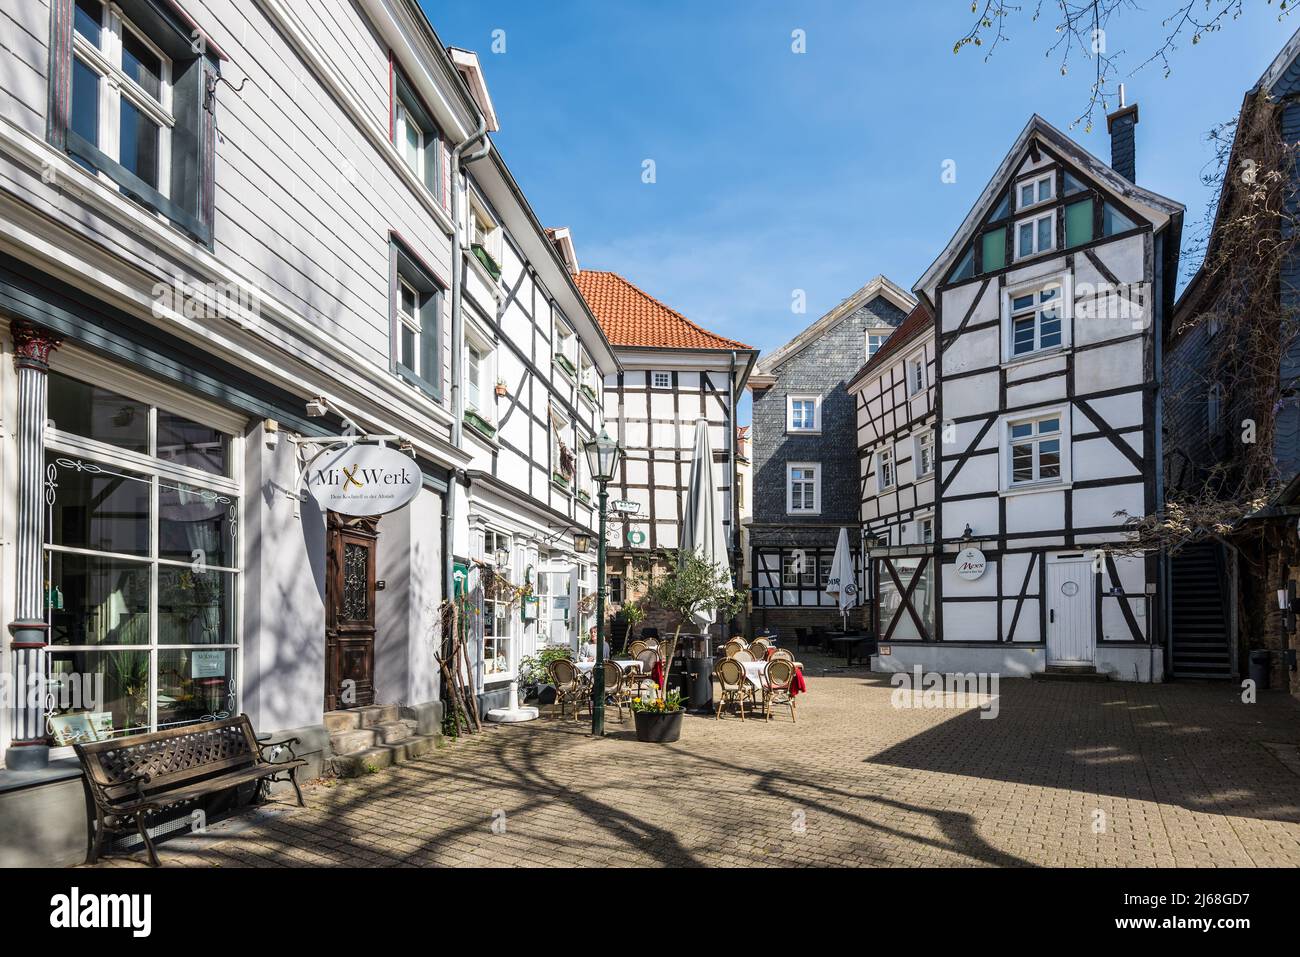 Hattingen, Germania - 11 aprile 2022: Architettura tradizionale delle tipiche case tedesche a graticcio a Hattingen, nella Renania settentrionale-Vestfalia. Foto Stock